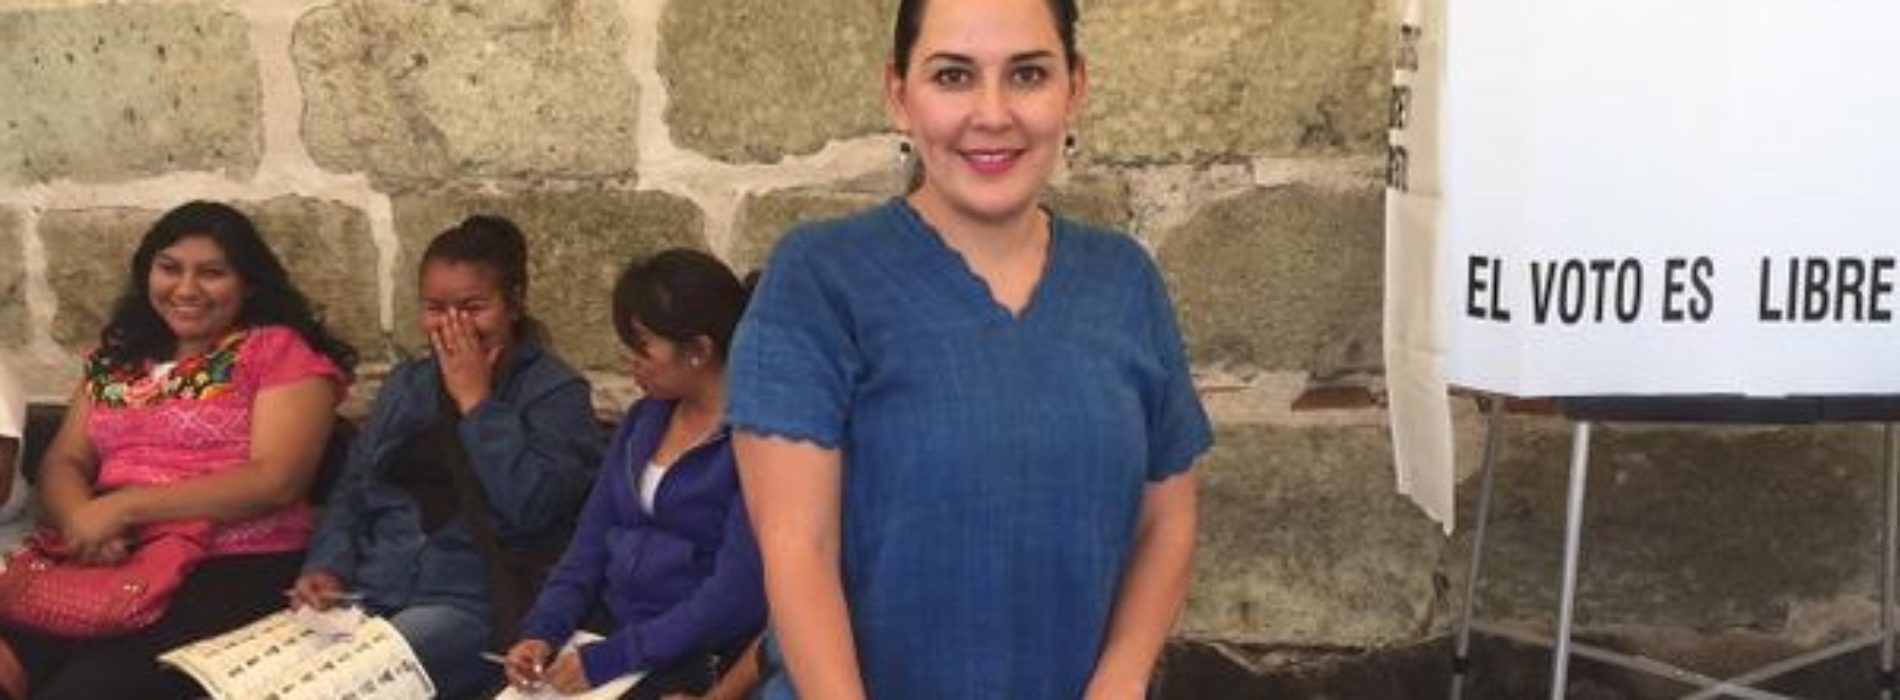 #Oaxaca @lesliejimenezv @62LegisOficial Construir ciudadanía es reto de todos: Leslie Jiménez Valencia